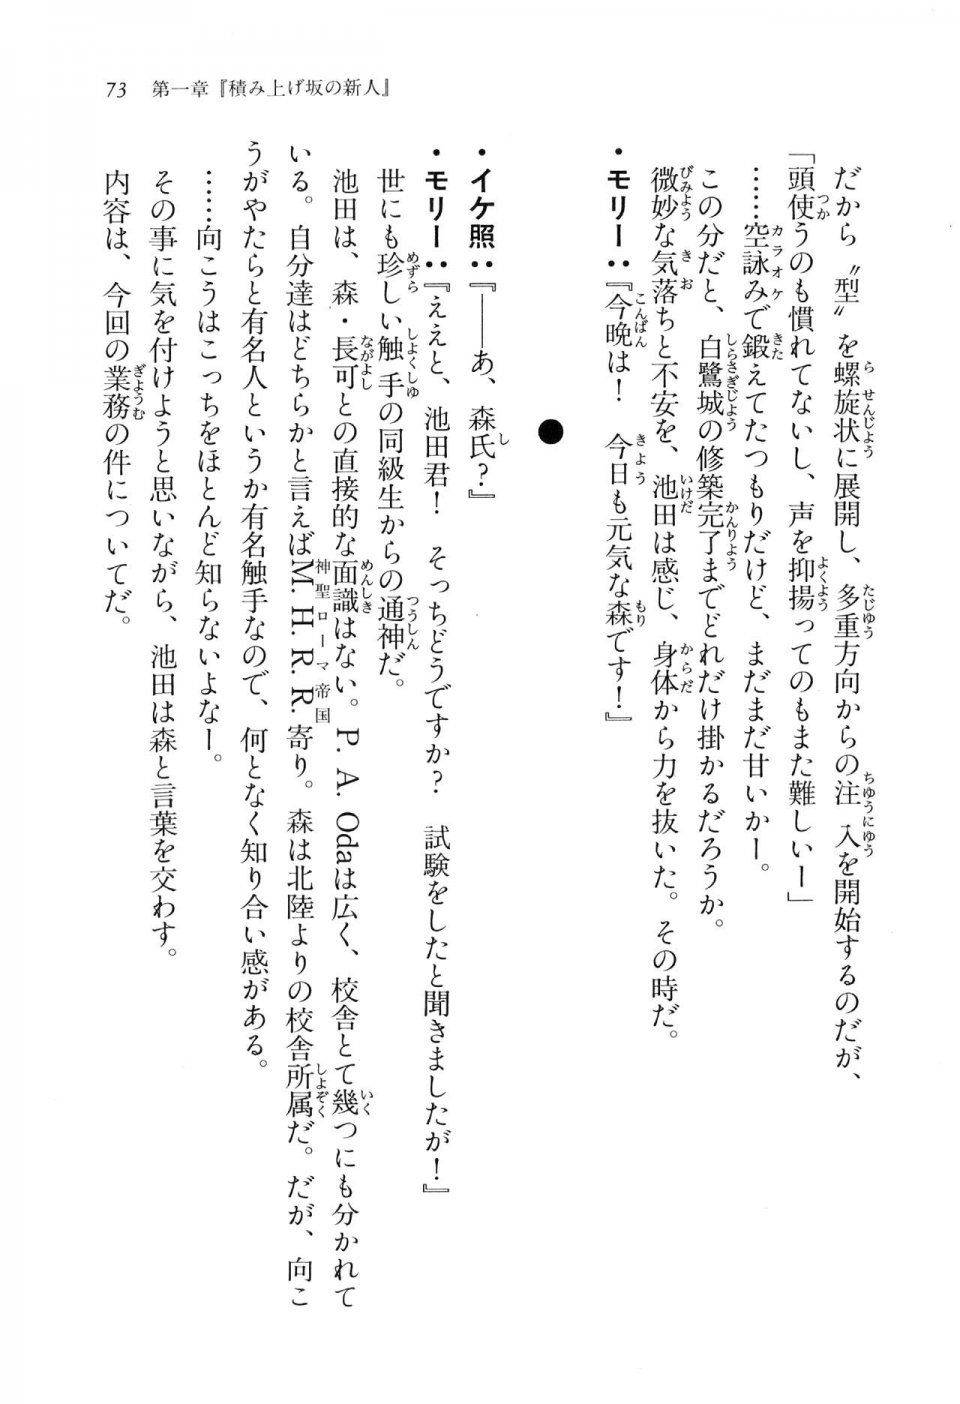 Kyoukai Senjou no Horizon LN Vol 16(7A) - Photo #73